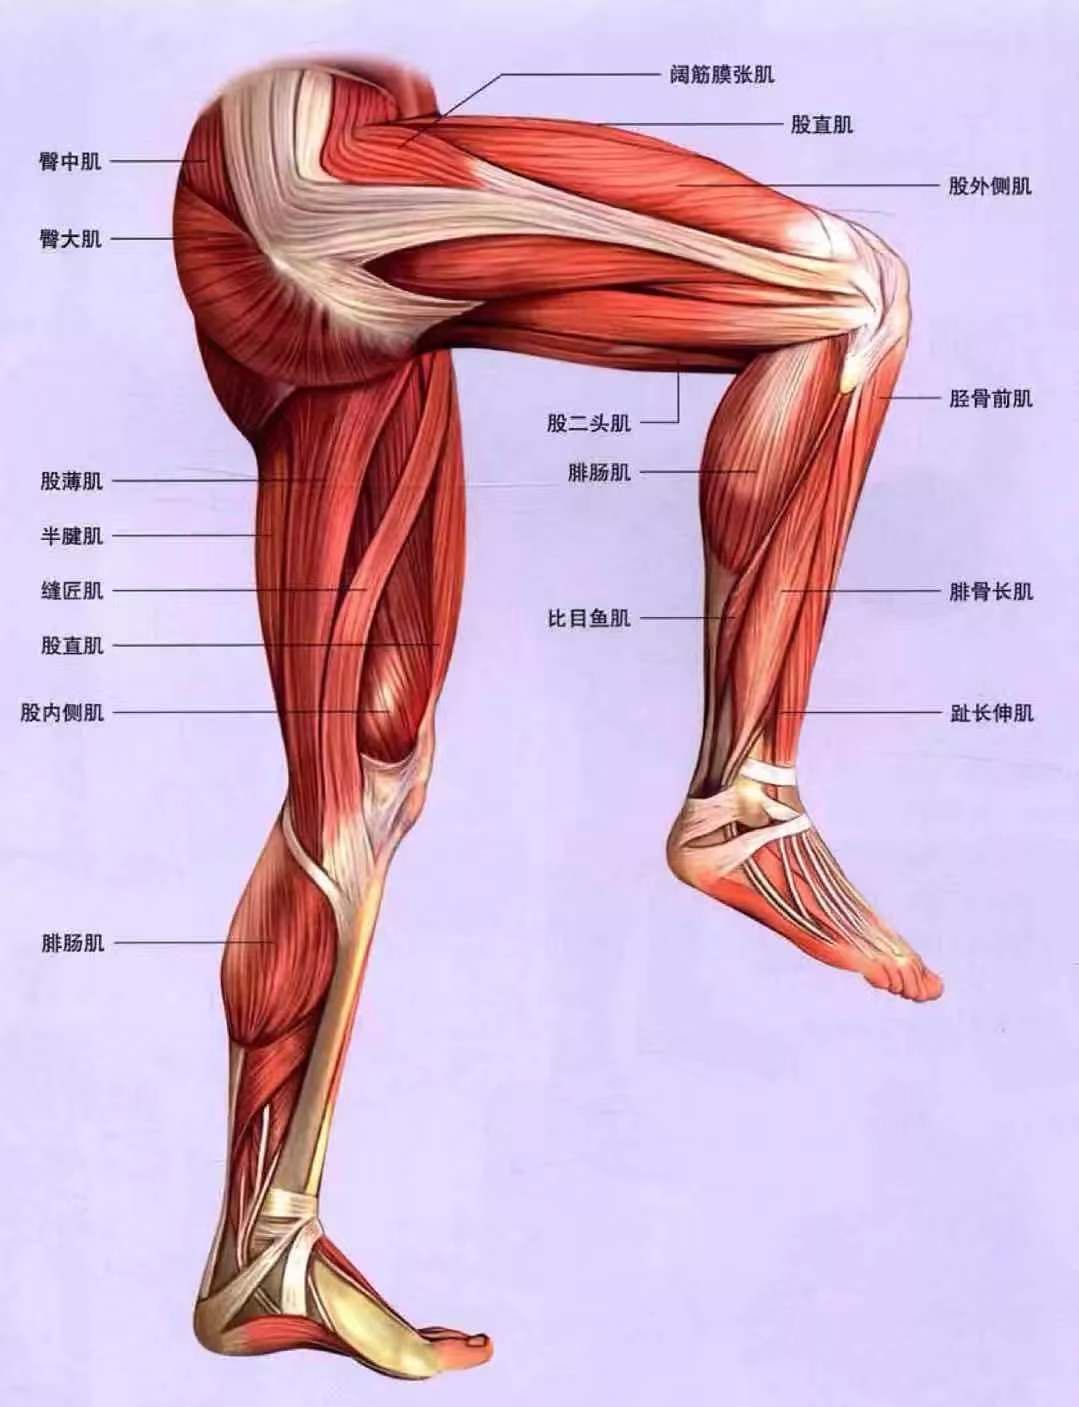 一般来说肌肉量低力量也差,腿就更是如此了,这是肌肉形状决定的